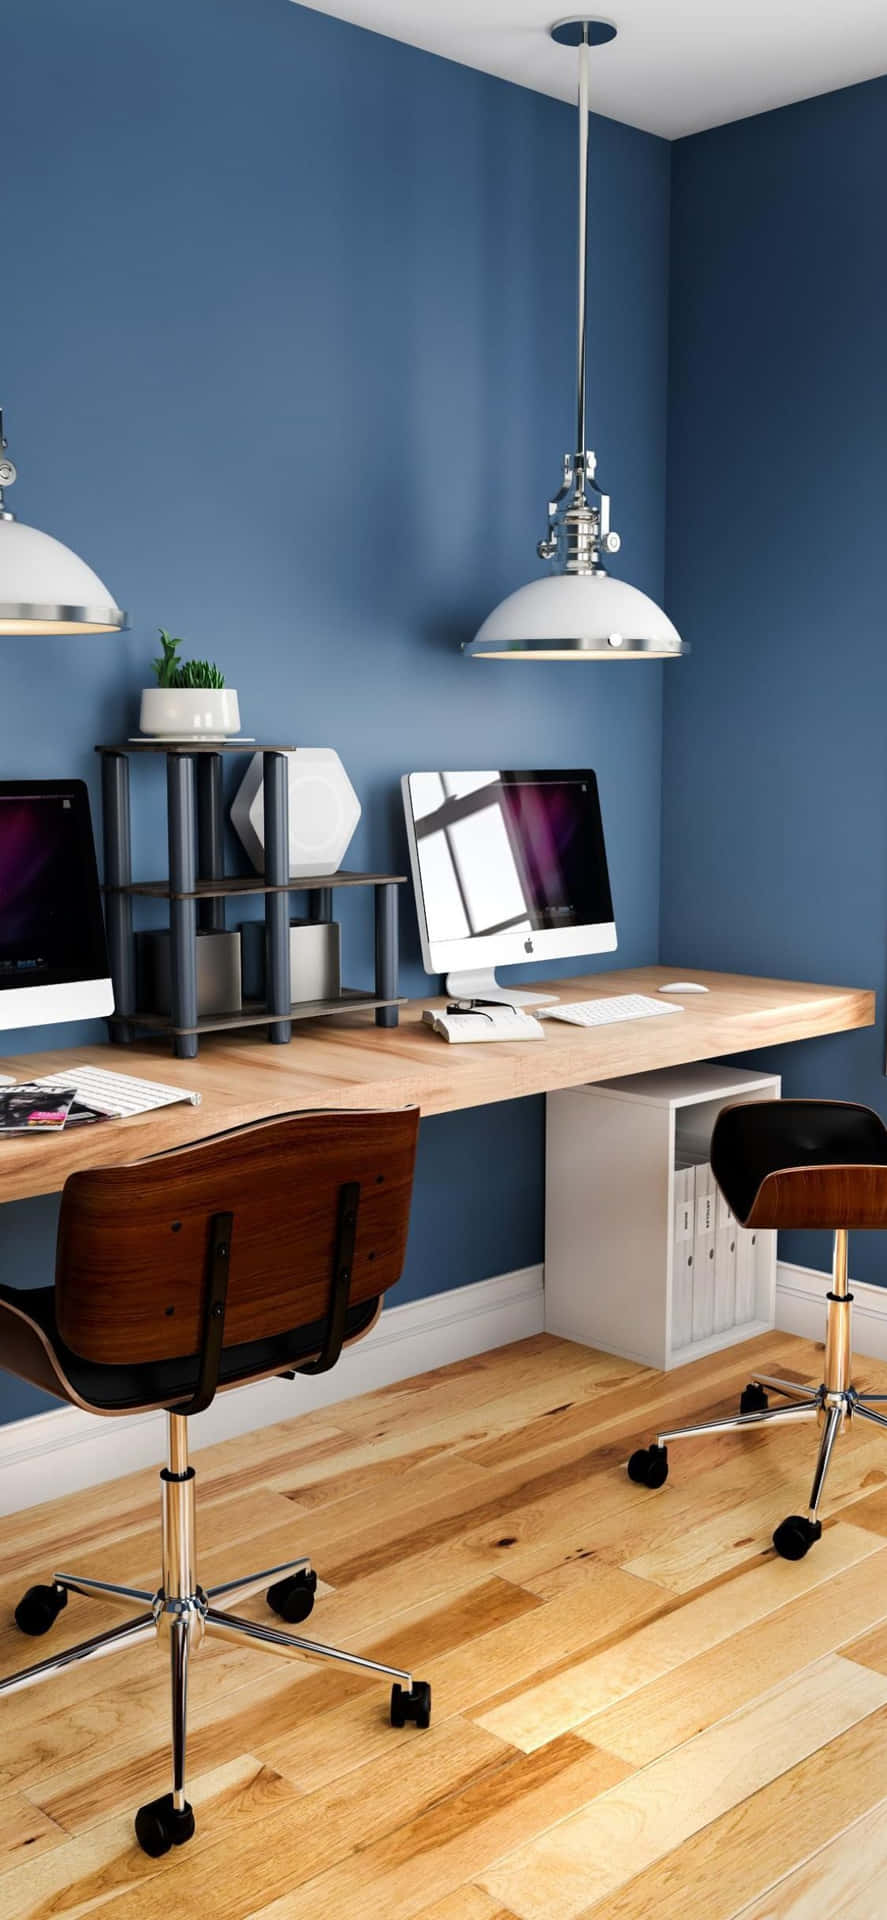 Iphonexs Büro Mit Blau Gestrichenen Wänden Hintergrund